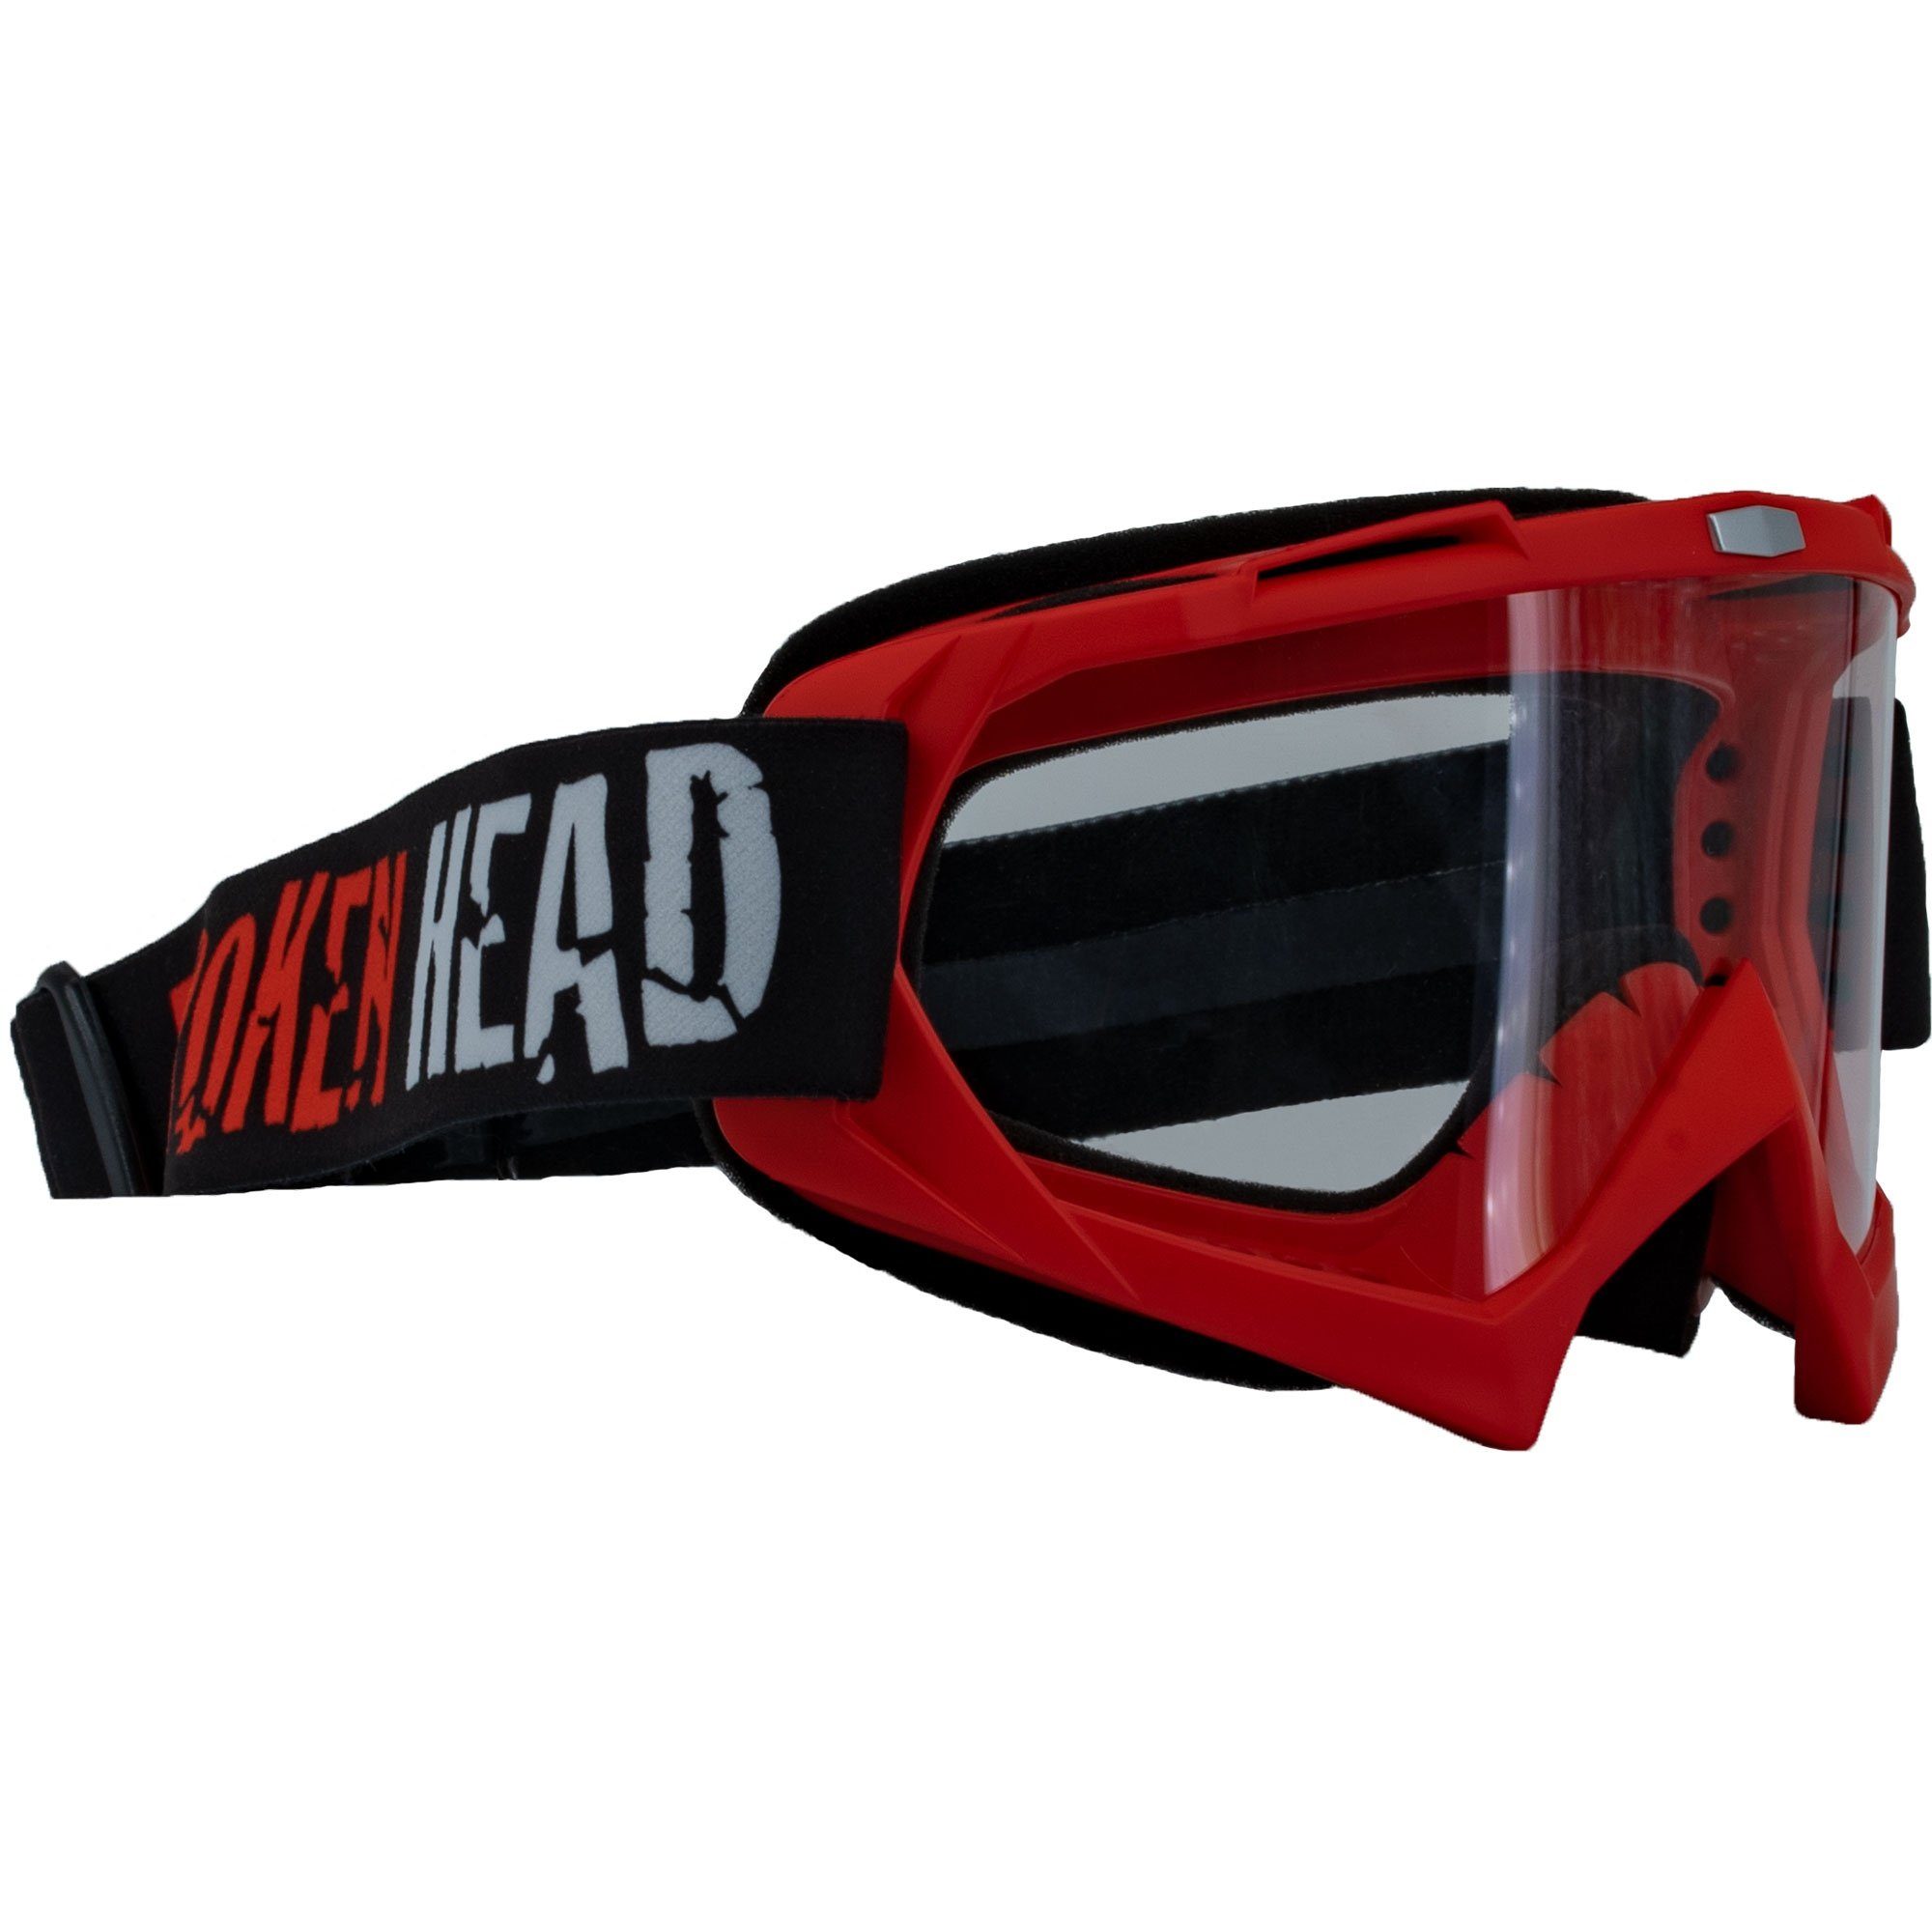 Vorrichtung MX-2 Broken Crossbrille Rot, für Goggle Motorradbrille Abreißvisiere Head